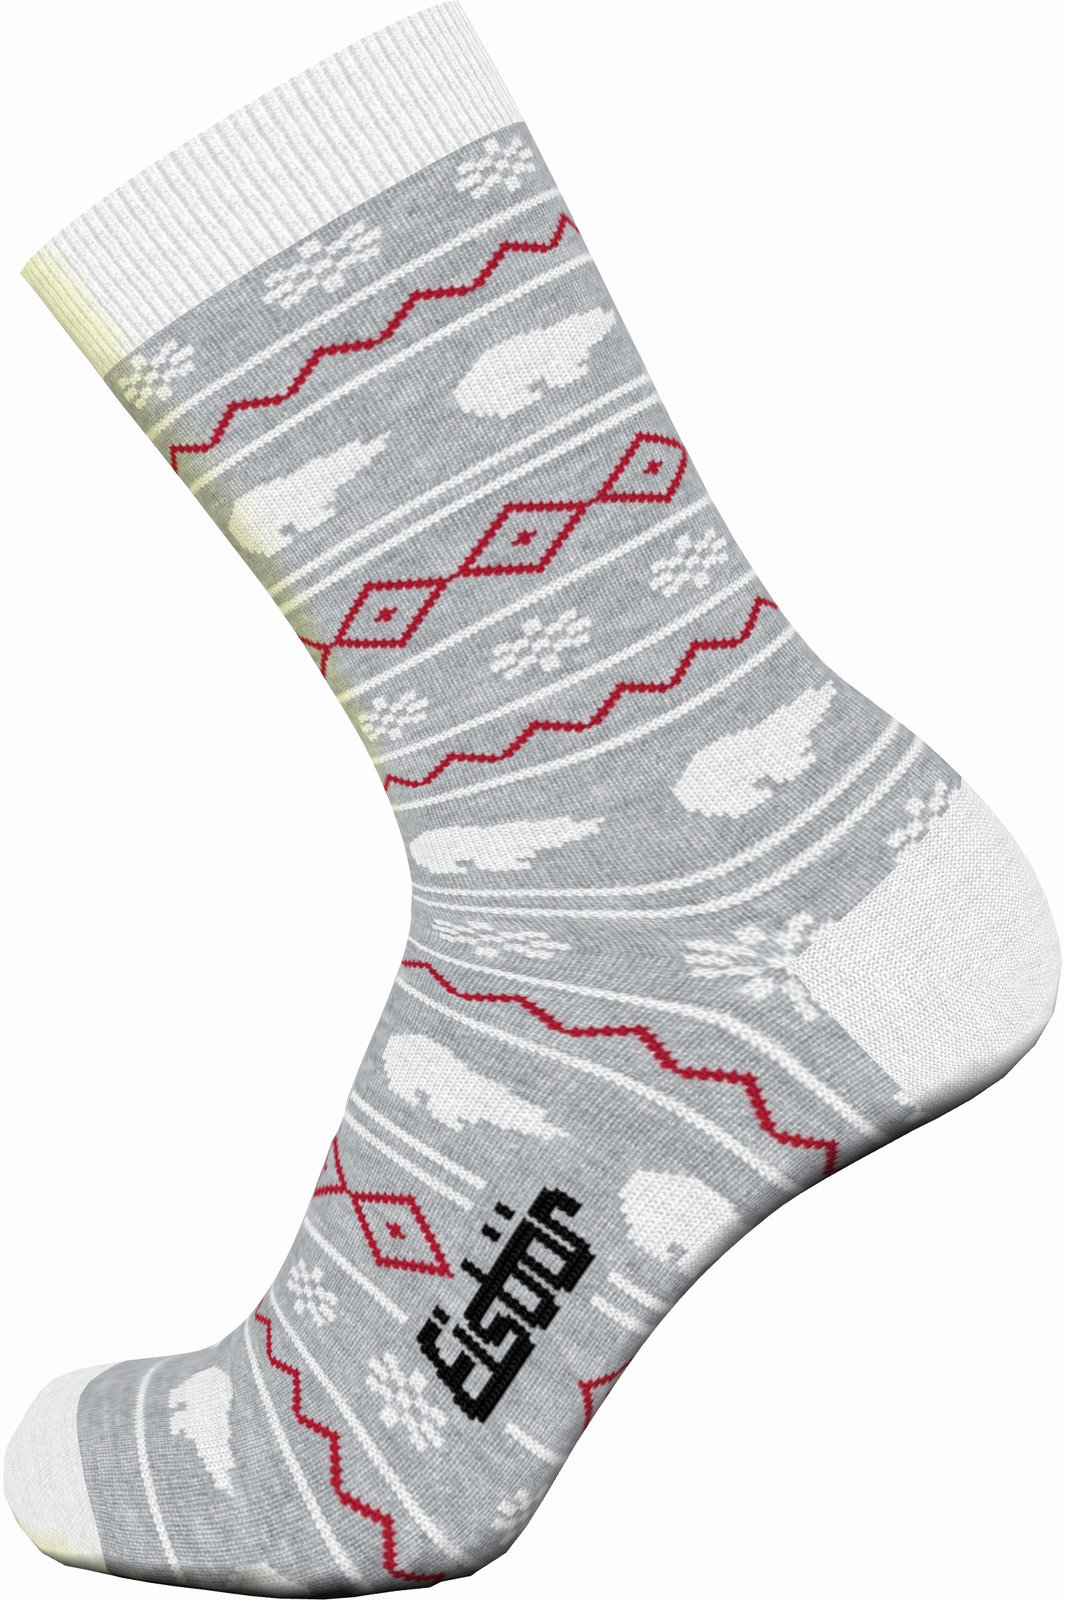 Ski-sokken Eisbär Lifestyle Jacquard Red-Grey 27-30 Ski-sokken (Alleen uitgepakt)